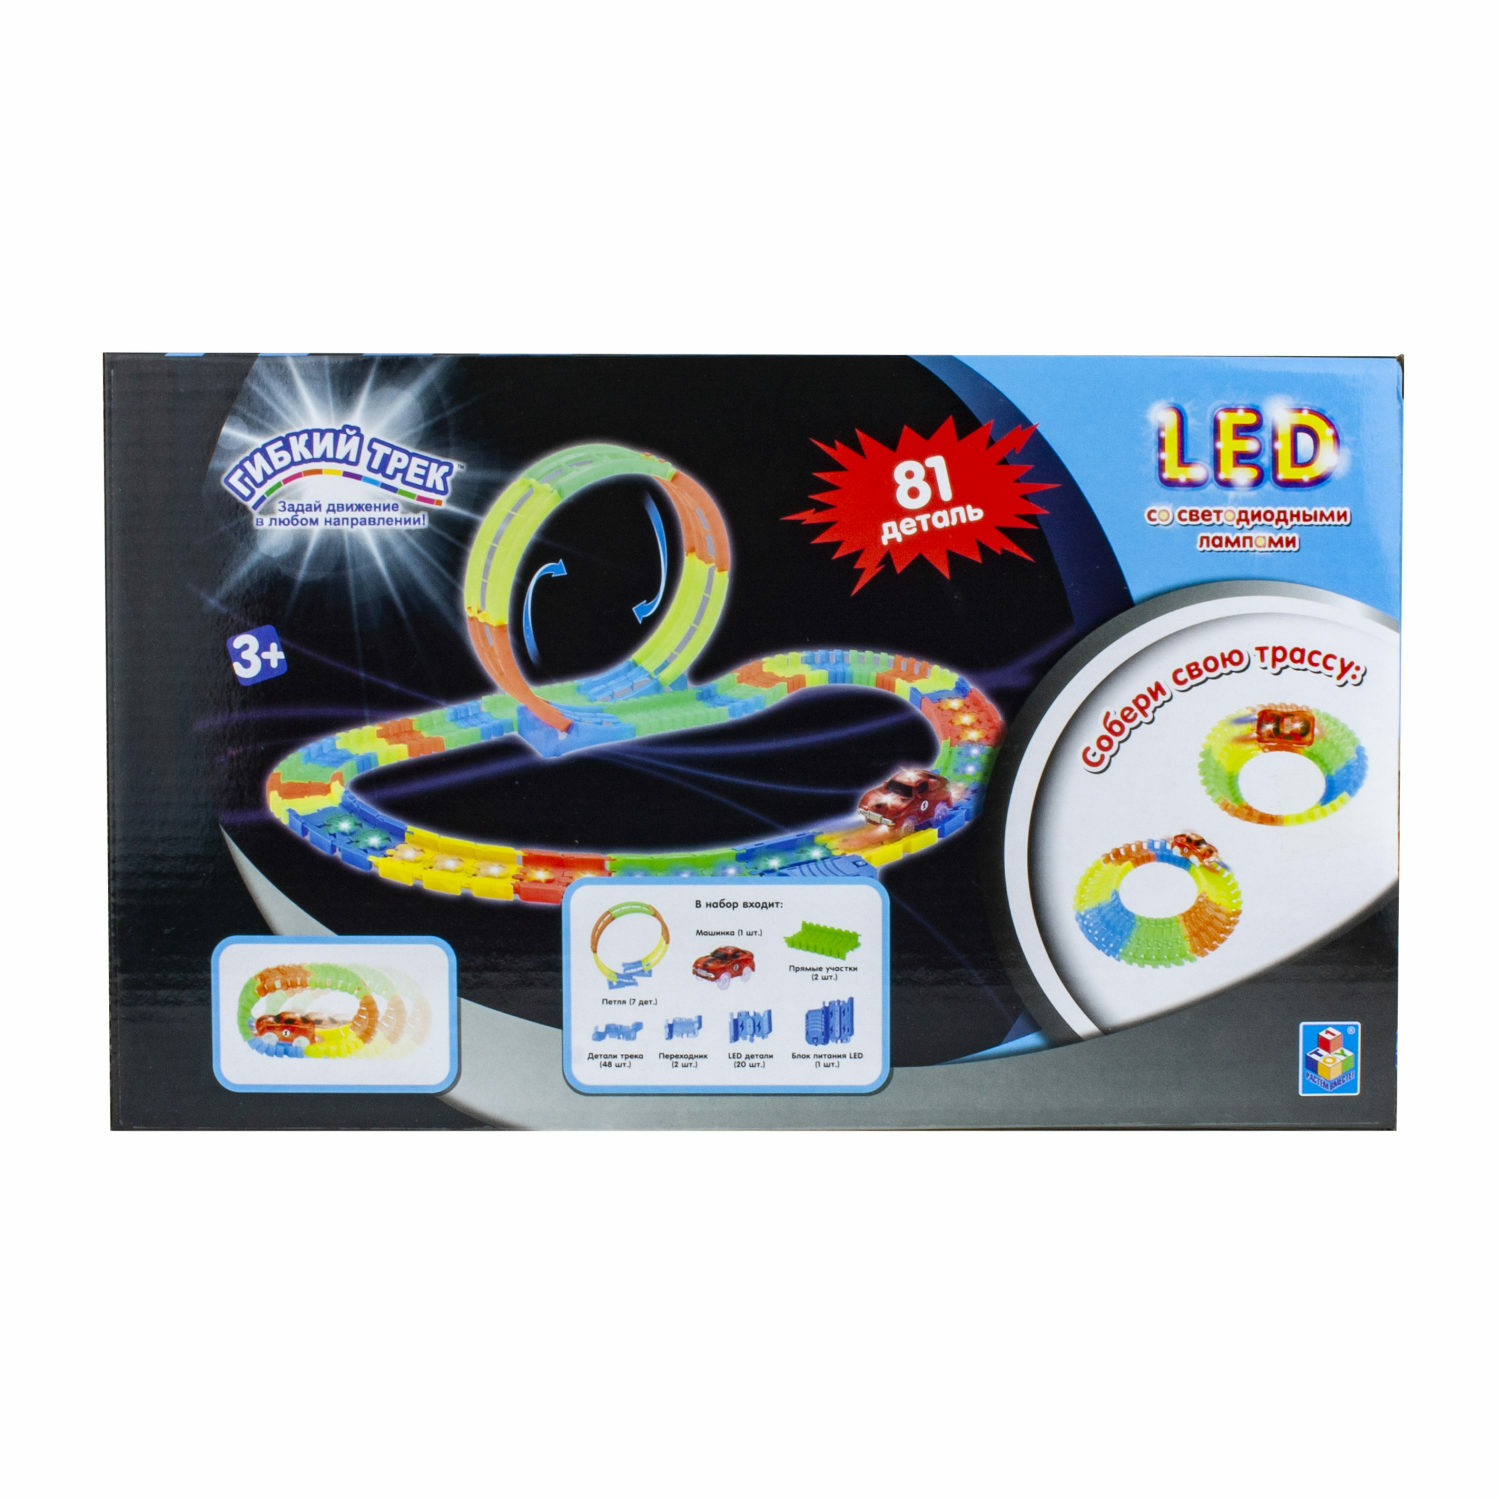 Игровой набор Гибкий трек LED со светодиодными лампами 81 деталь Т16188 - фото 5